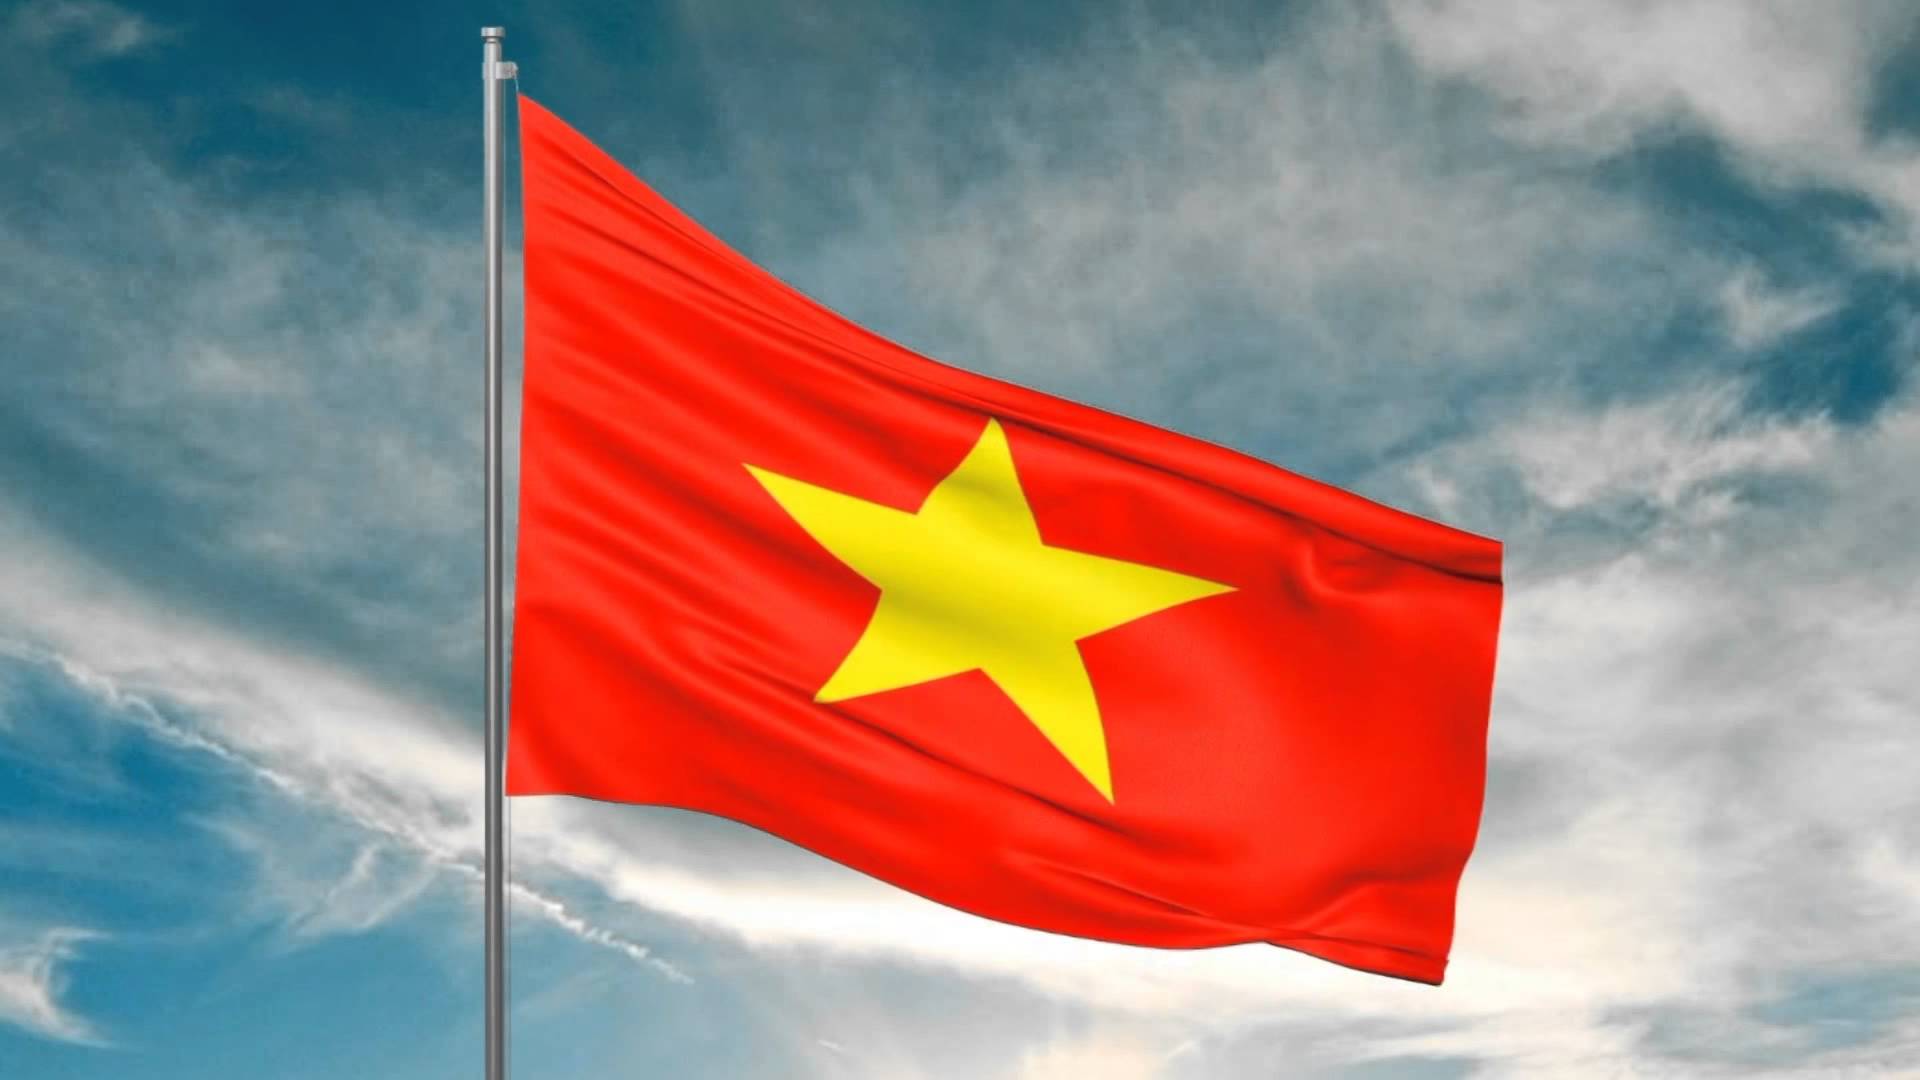 Cờ đỏ sao vàng - Sau hơn một năm kể từ khi Quốc hội thông qua Luật Dân quyền 2022, Việt Nam đã tiến thêm một bước dài trong việc thúc đẩy tôn vinh giá trị của cờ đỏ sao vàng - biểu tượng quốc gia của Việt Nam. Cờ đang được đưa vào sử dụng rộng rãi tại các cơ quan nhà nước và trên các máy bay của Hãng hàng không Quốc gia Việt Nam. Hãy xem ảnh để tôn vinh vẻ đẹp của cờ đỏ sao vàng!